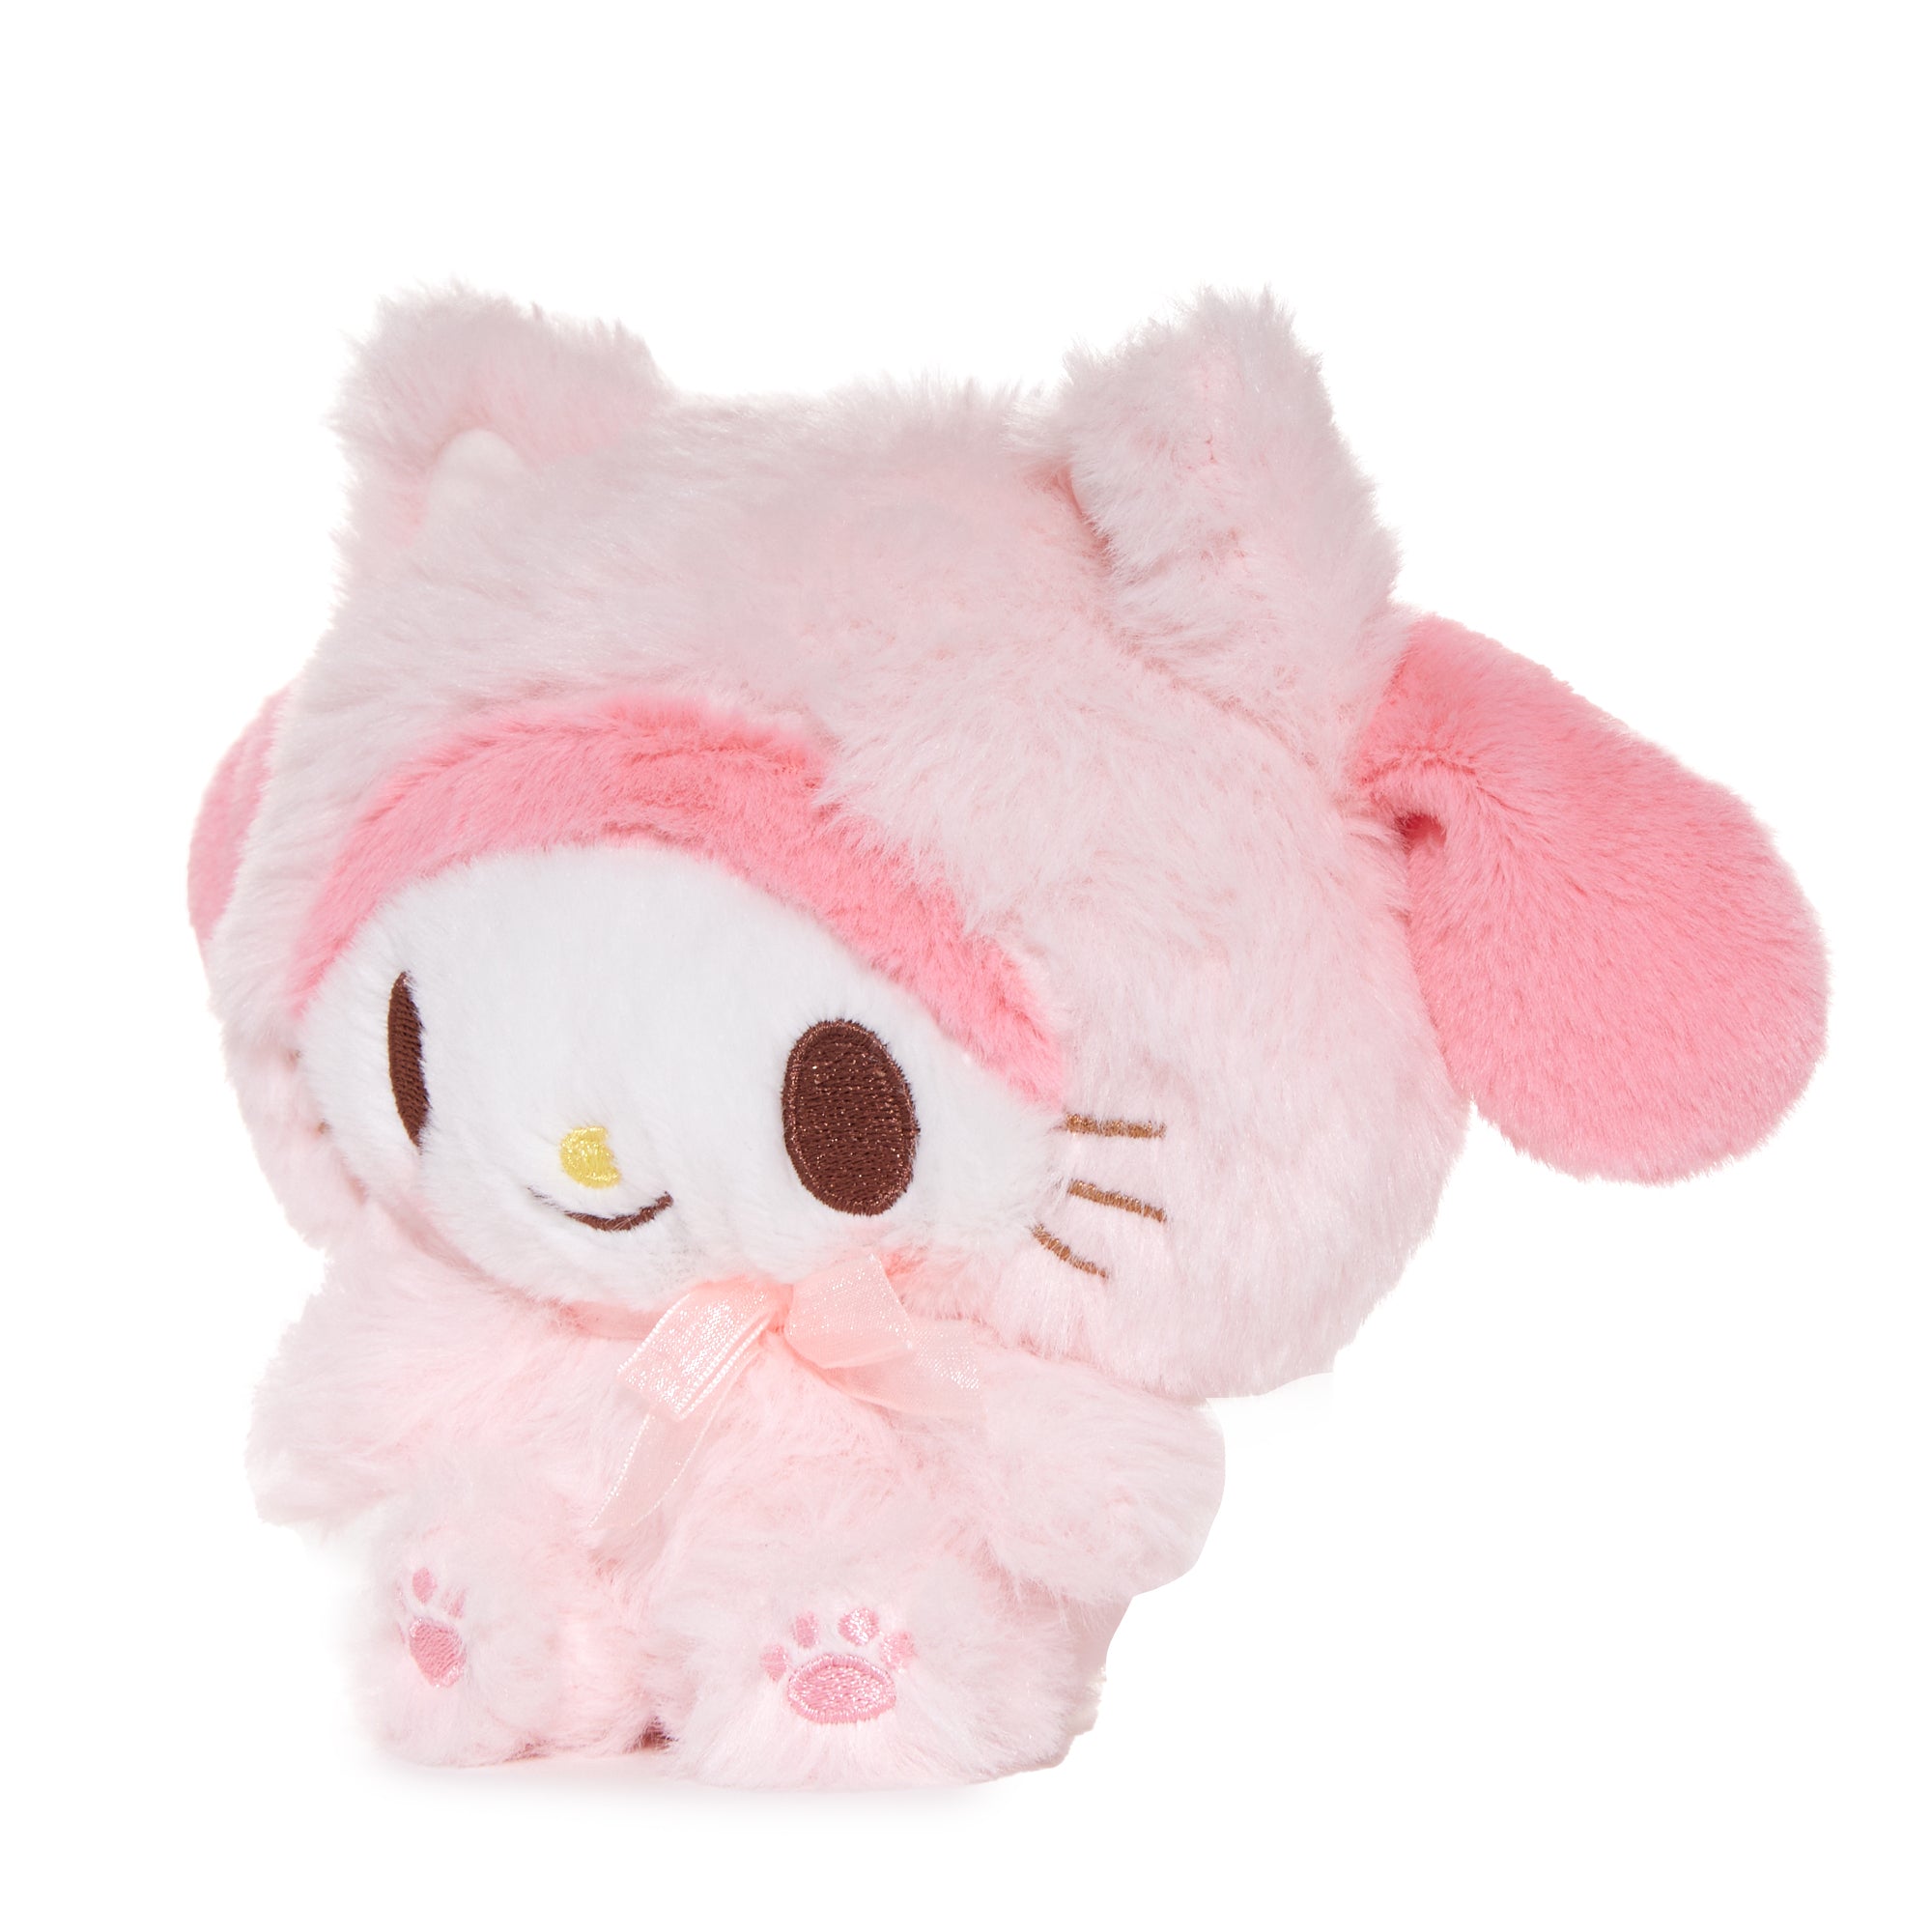 My Melody 6" Kitten Mascot Plush Plush NAKAJIMA CORPORATION   